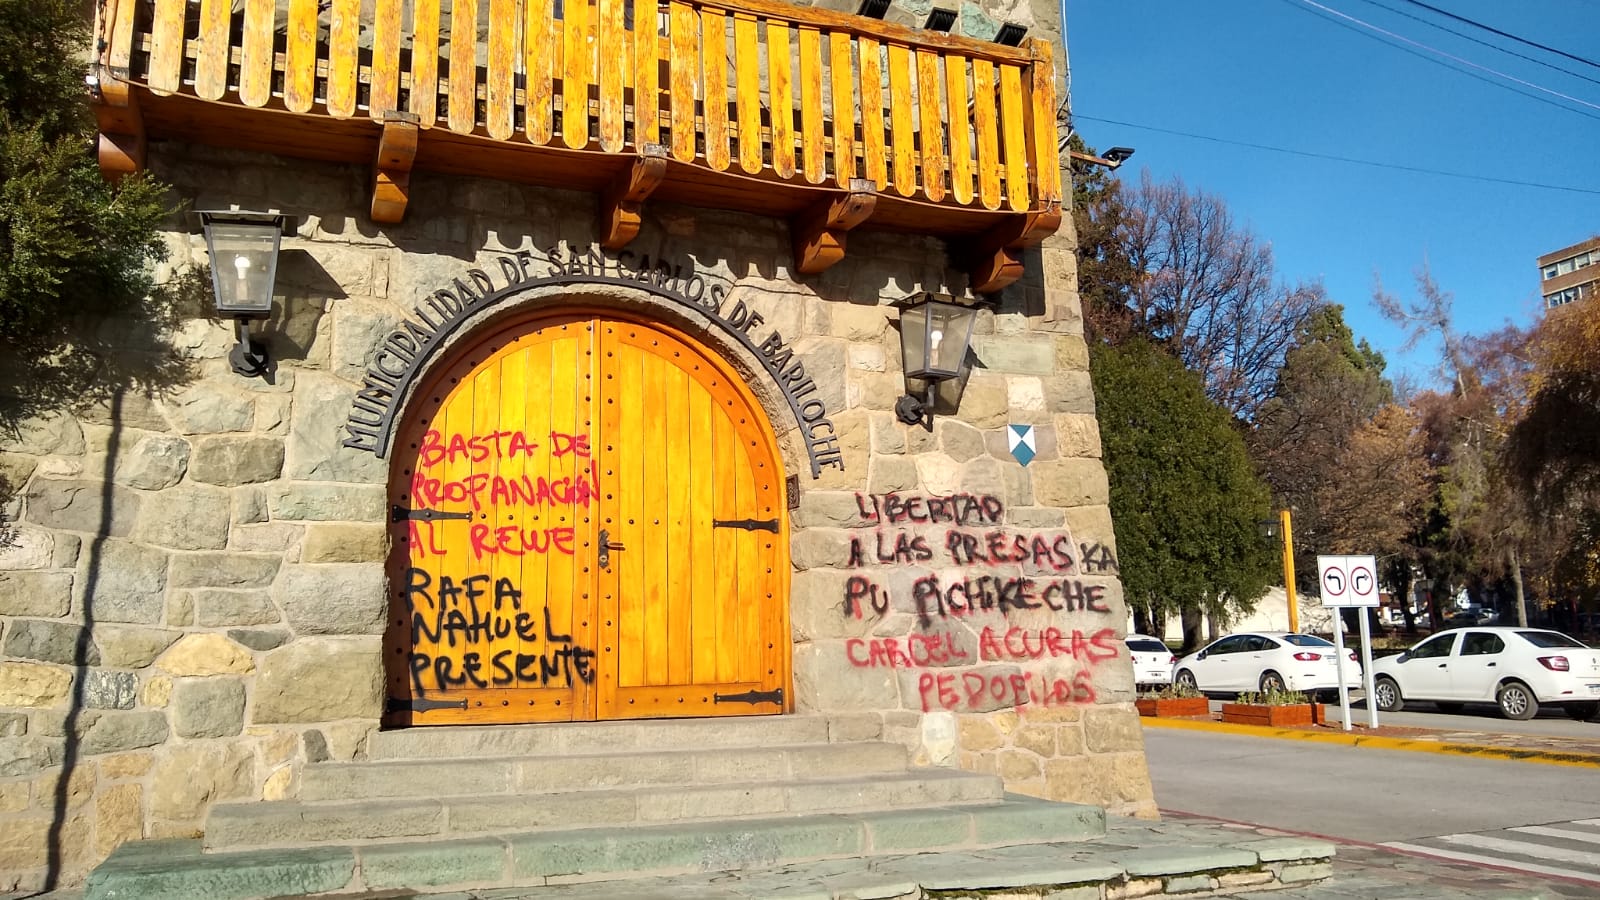 Consignas por la libertad de mujeres mapuches, por Justicia para Rafael Nahuel y contra los curas pedófilos, en la puerta de la Municipalidad de Bariloche. 